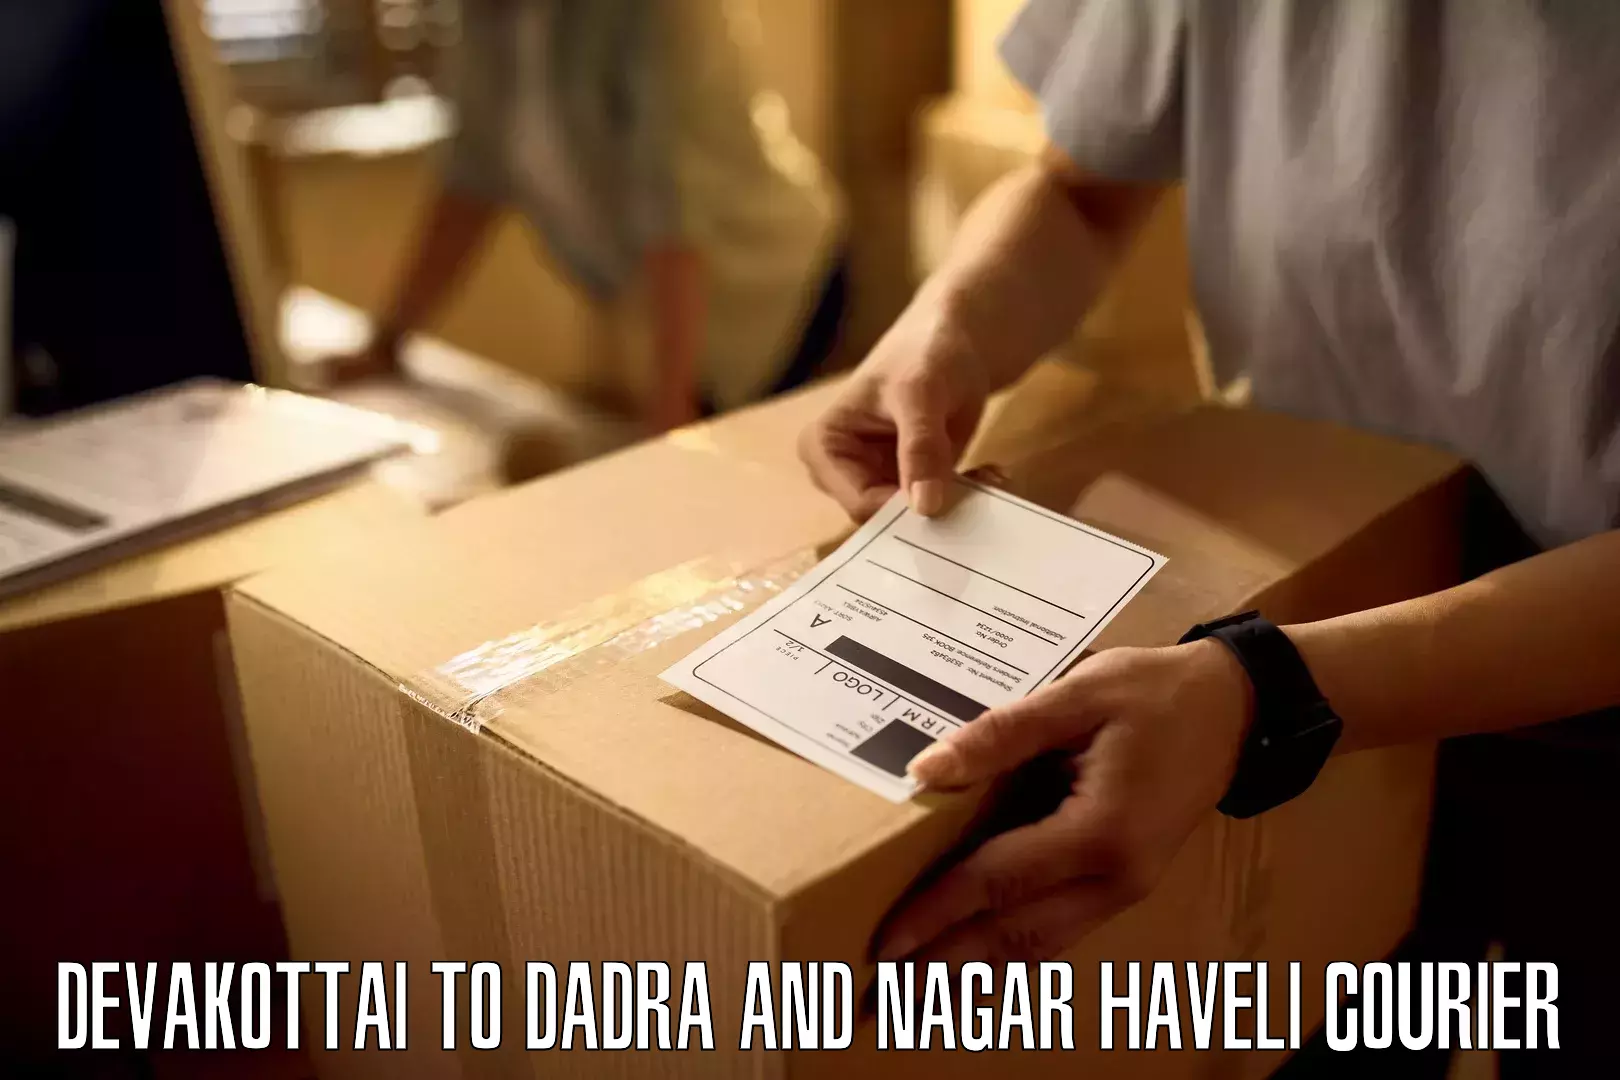 Logistics service provider Devakottai to Dadra and Nagar Haveli